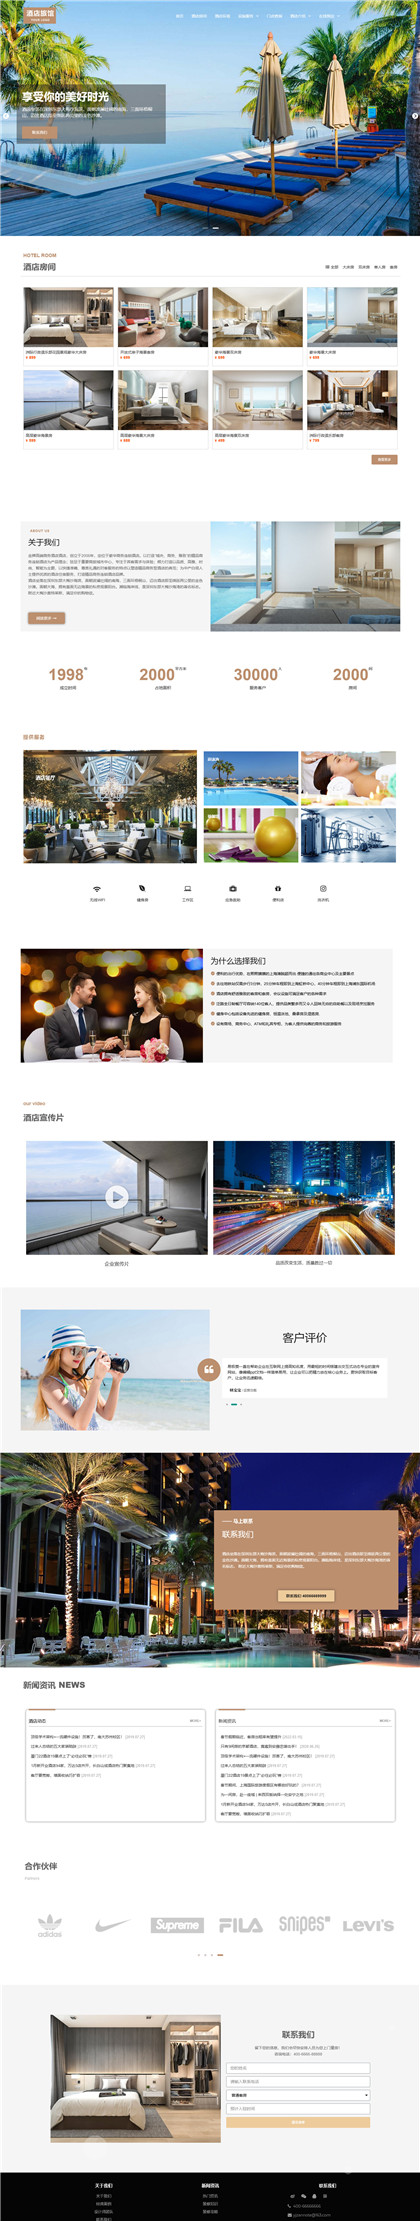 商务酒店-青旅-民宿-青年旅馆网站模板网站模板预览图片